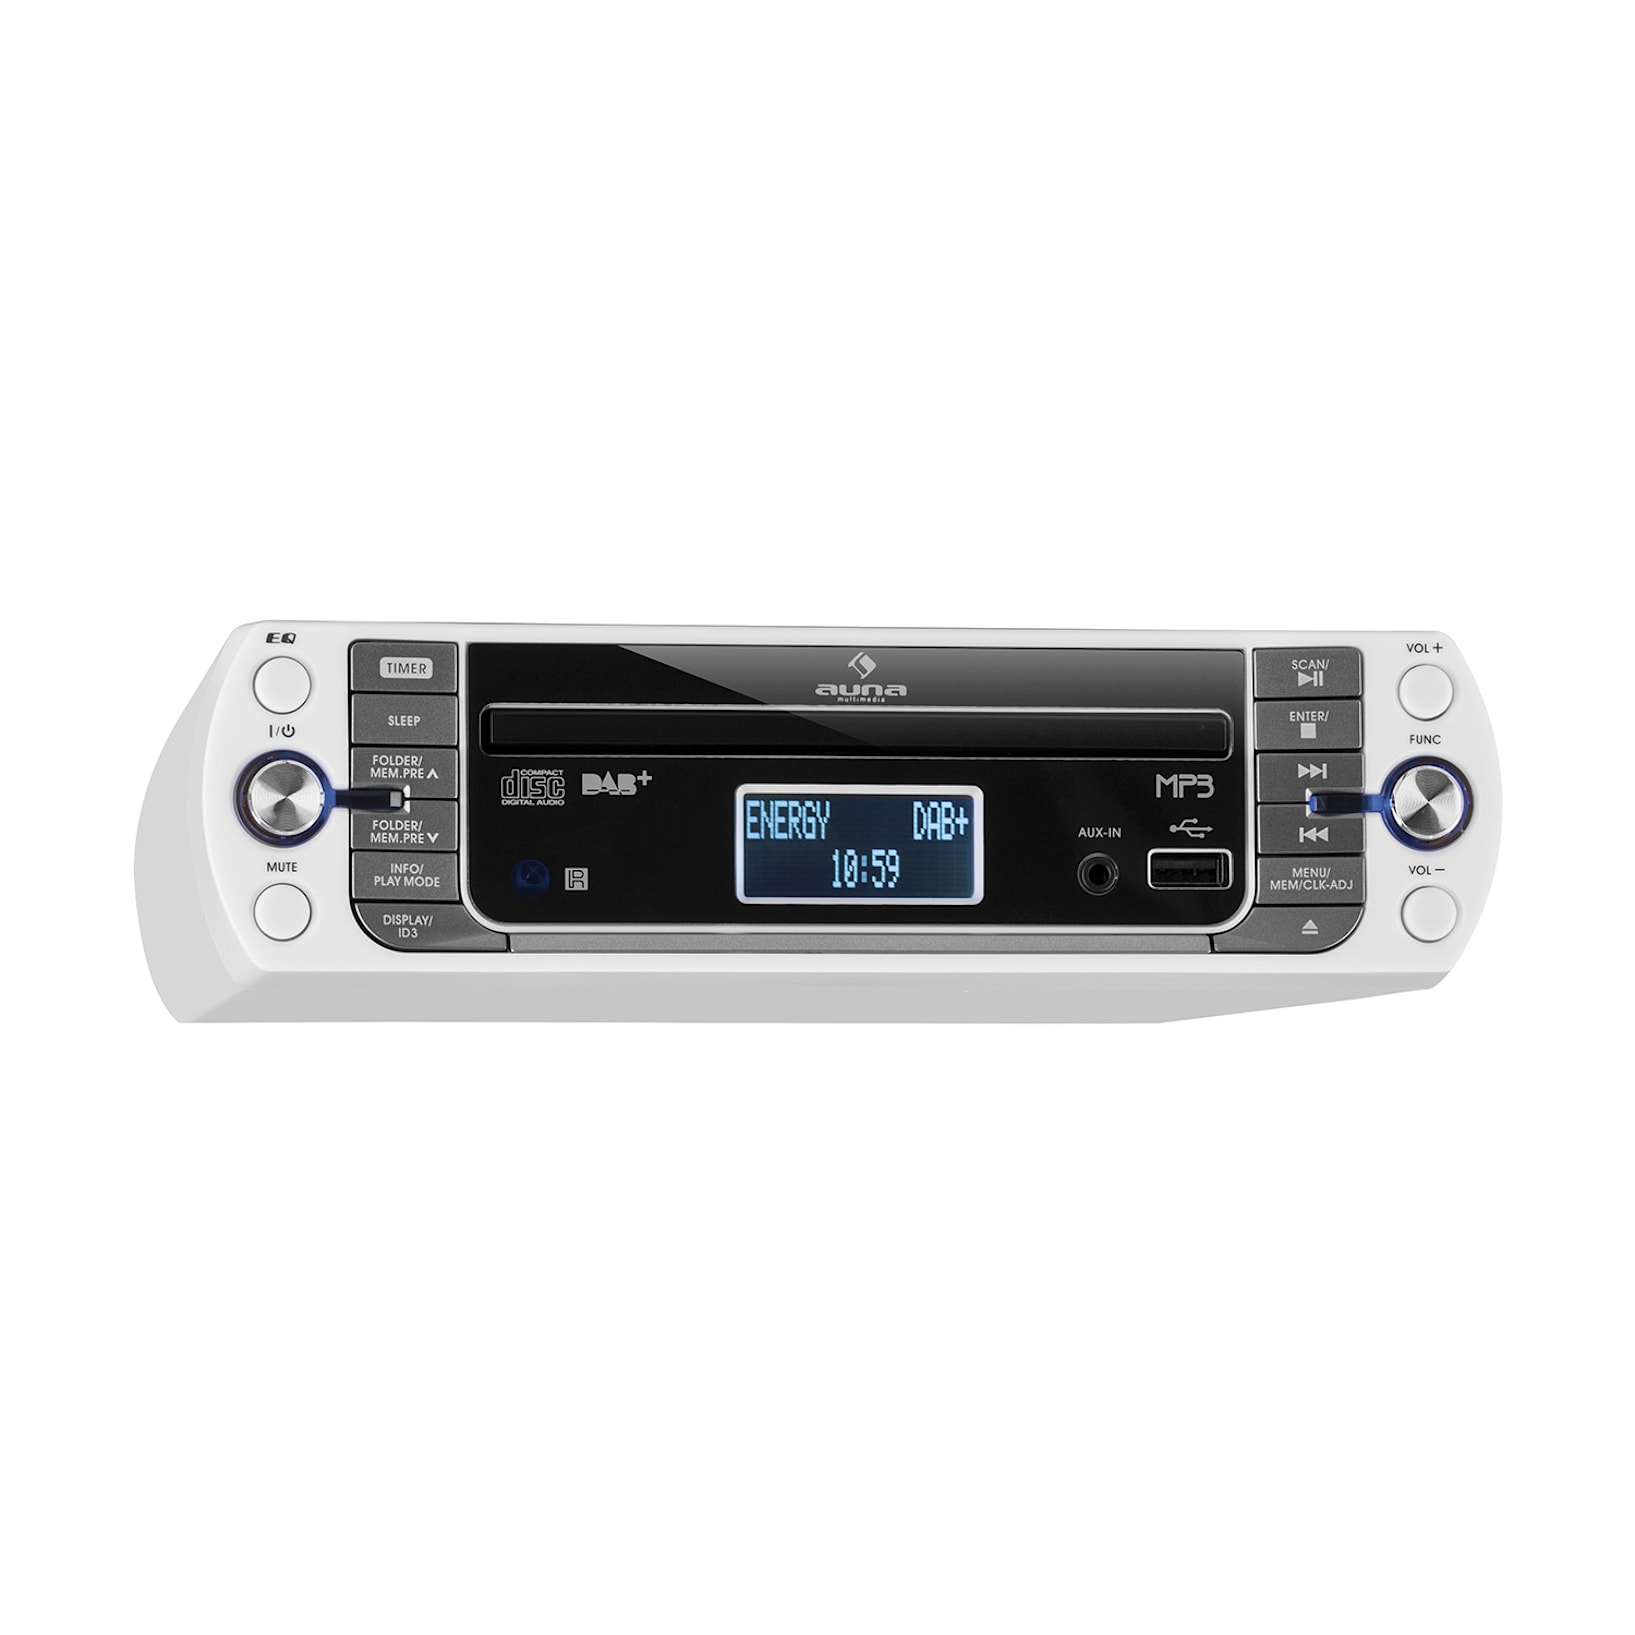 Konyhai rádió, KR-400 CD DAB+/PLL FM rádió, CD/Mp3-lejátszó, ezüst Ezüst